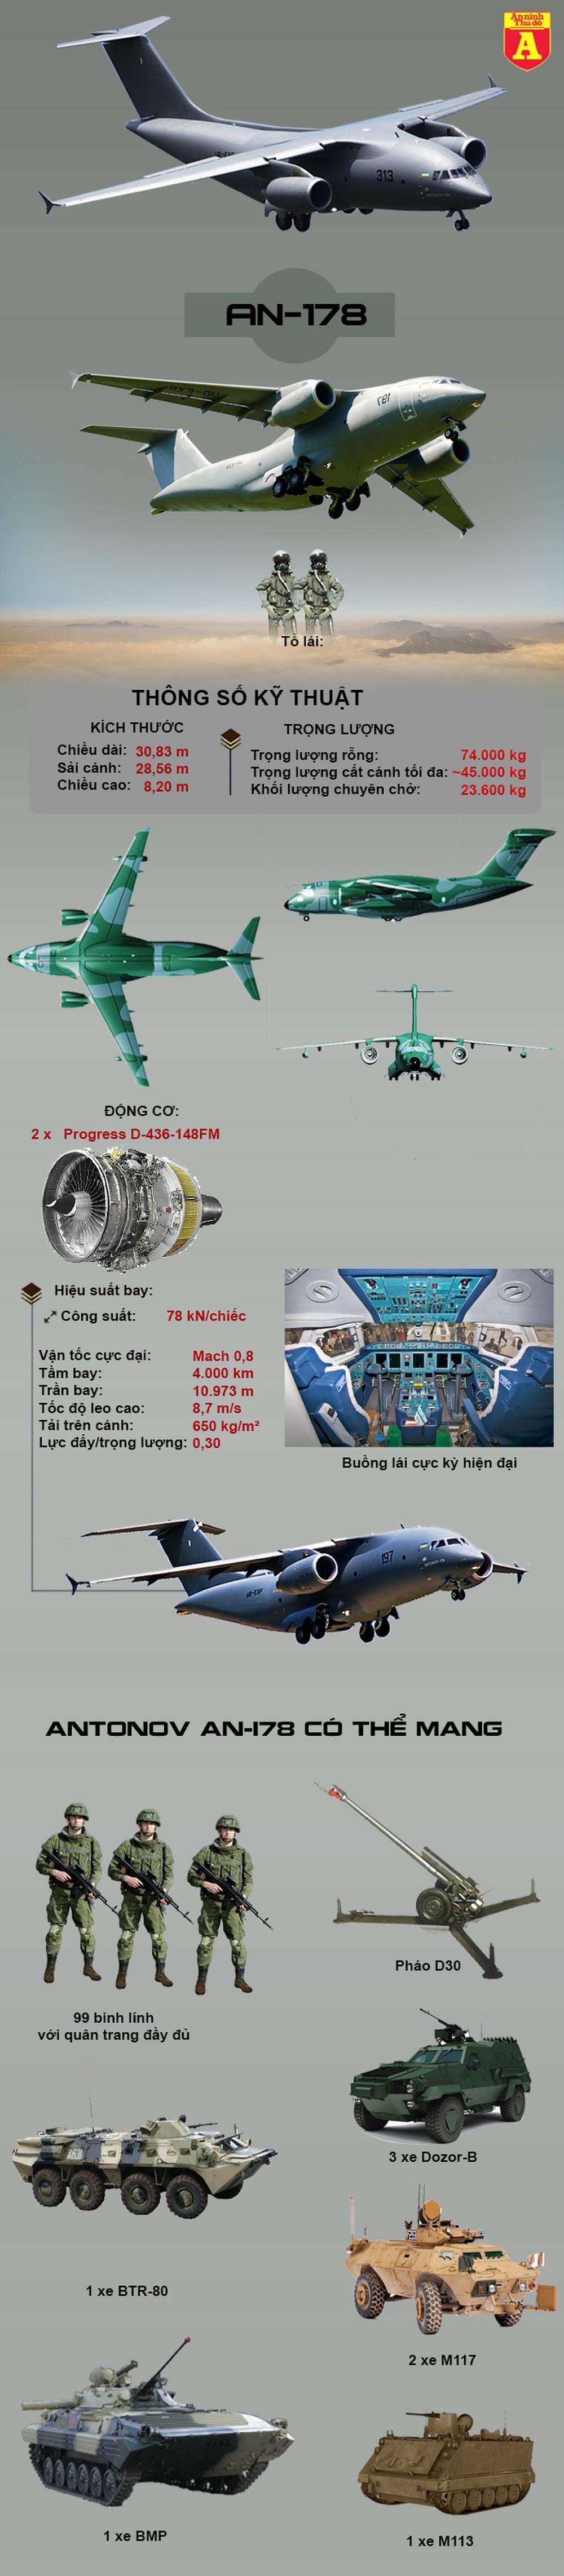 [Infographics] Sức mạnh vận tải cơ An-178 mà Ukraine sắp tiếp nhận ra sao? - Ảnh 1